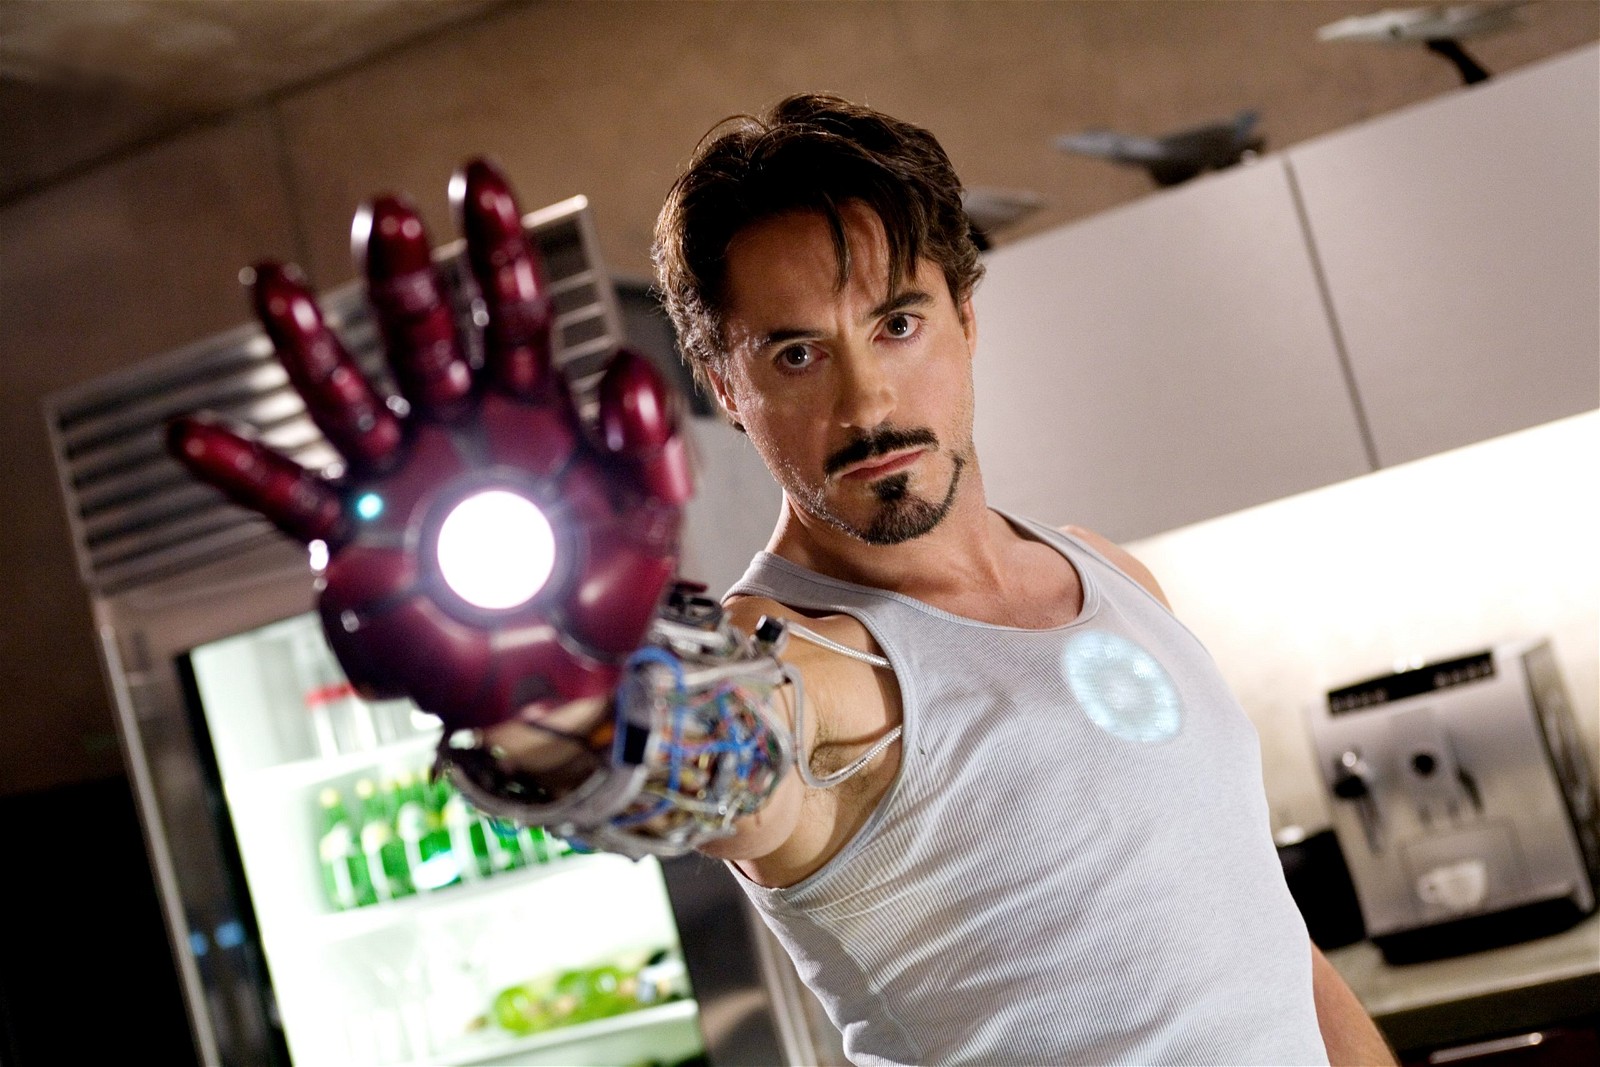 Robert Downey Jr as Iron Man